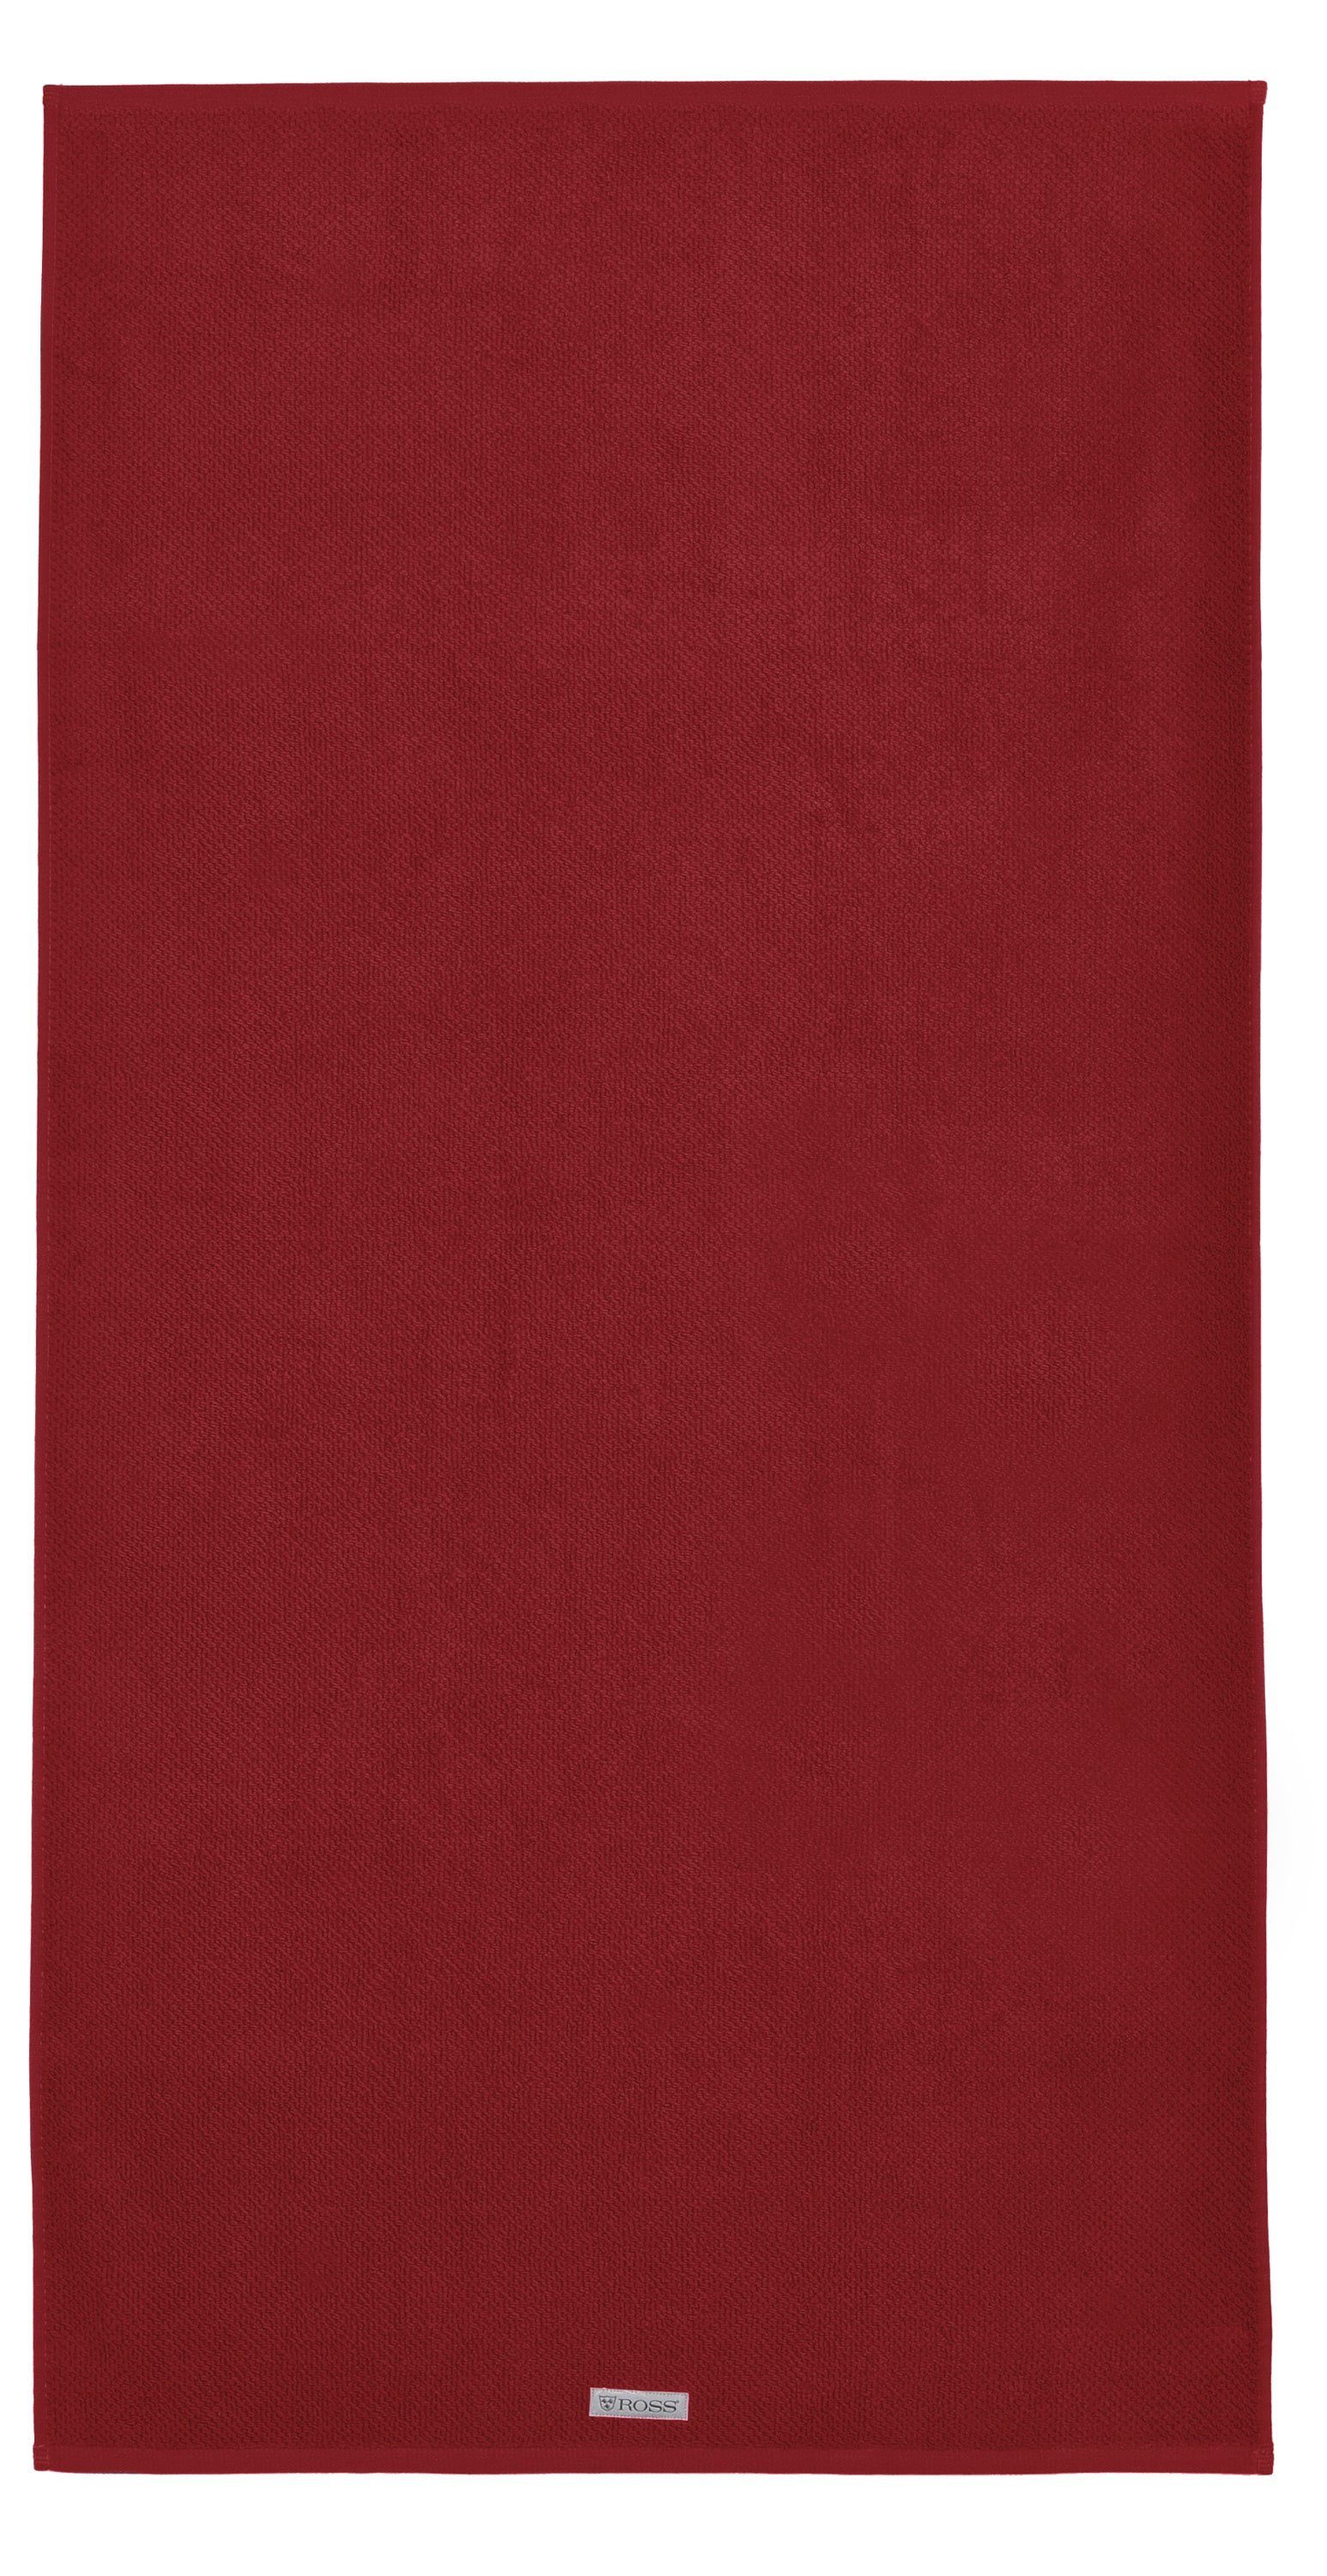 rubin, Handtuch Gästetuch (1-St), SELECTION Waschhandschuh GOTS Handtuch Frottee 4007-14, rechteckig ROSS Verifiziert, Duschtuch Serie ROSS